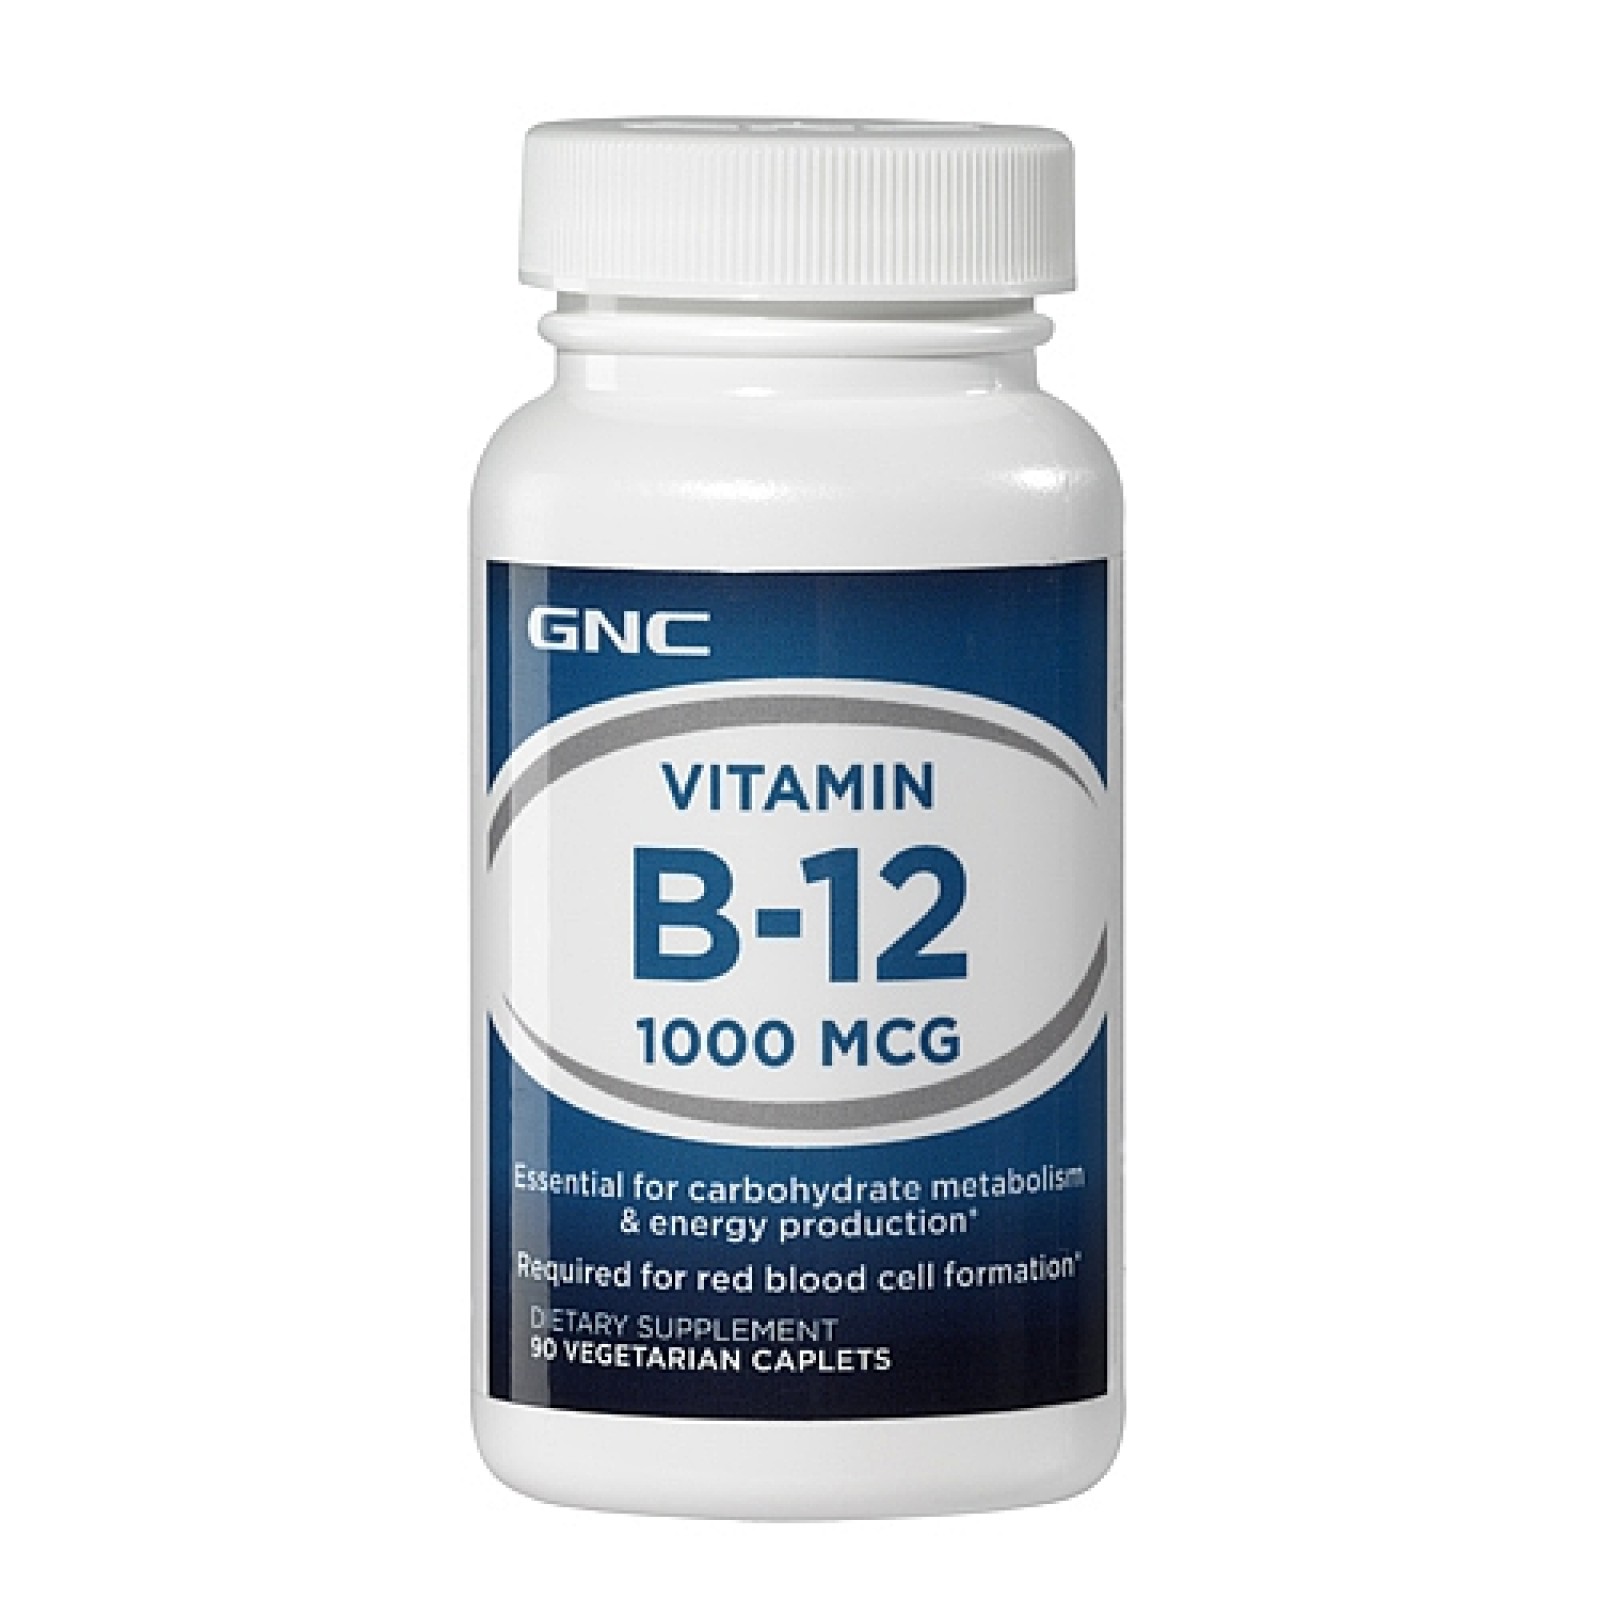 Витамин б в капсулах. Vitamin b12 1000 MCG. B2 b6 b12 витамины. Витамин в 12 GNC. GNC витамины.